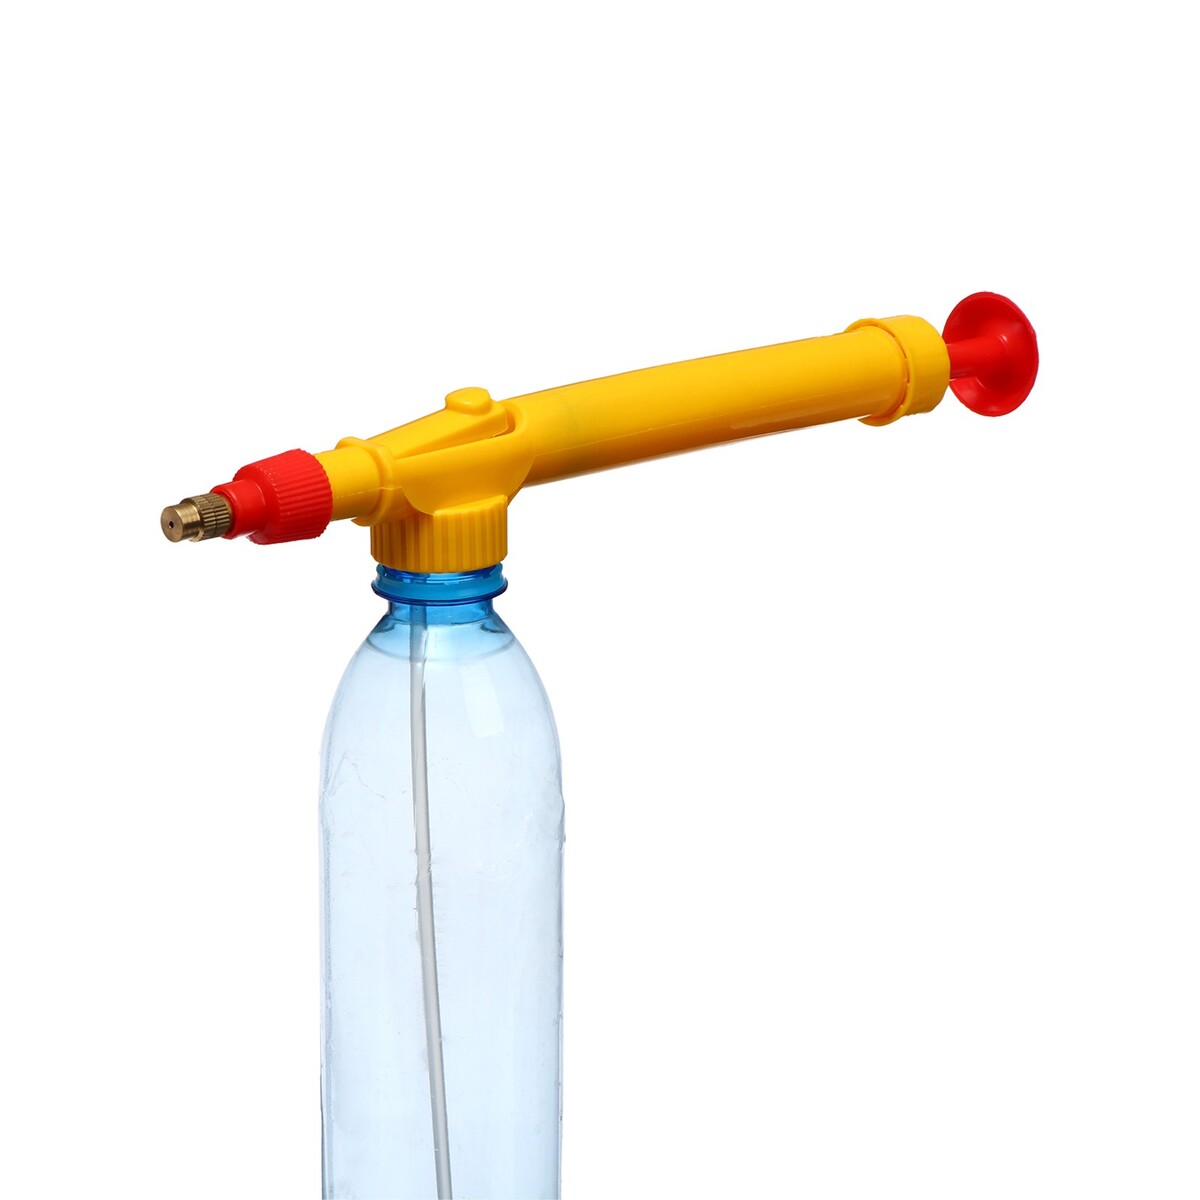 Опрыскиватель ручной, длина 29 см, с резьбой под пульверизатор/бутылку, пластик отвод стальной крутоизогнутый с резьбой 1